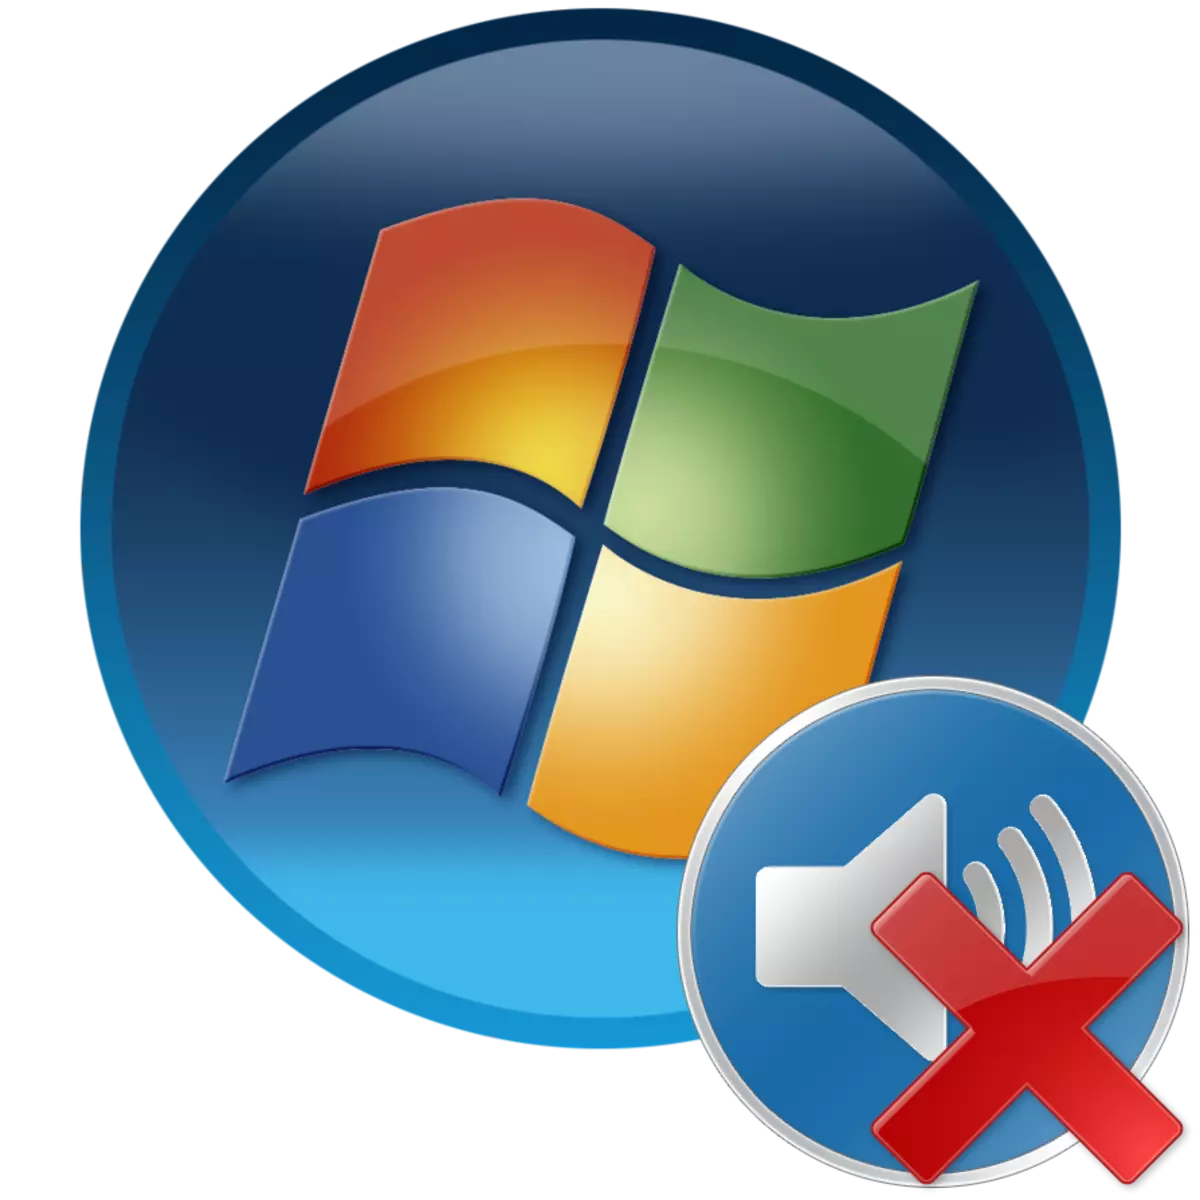 התקן הפלט אינו מותקן ב- Windows 7